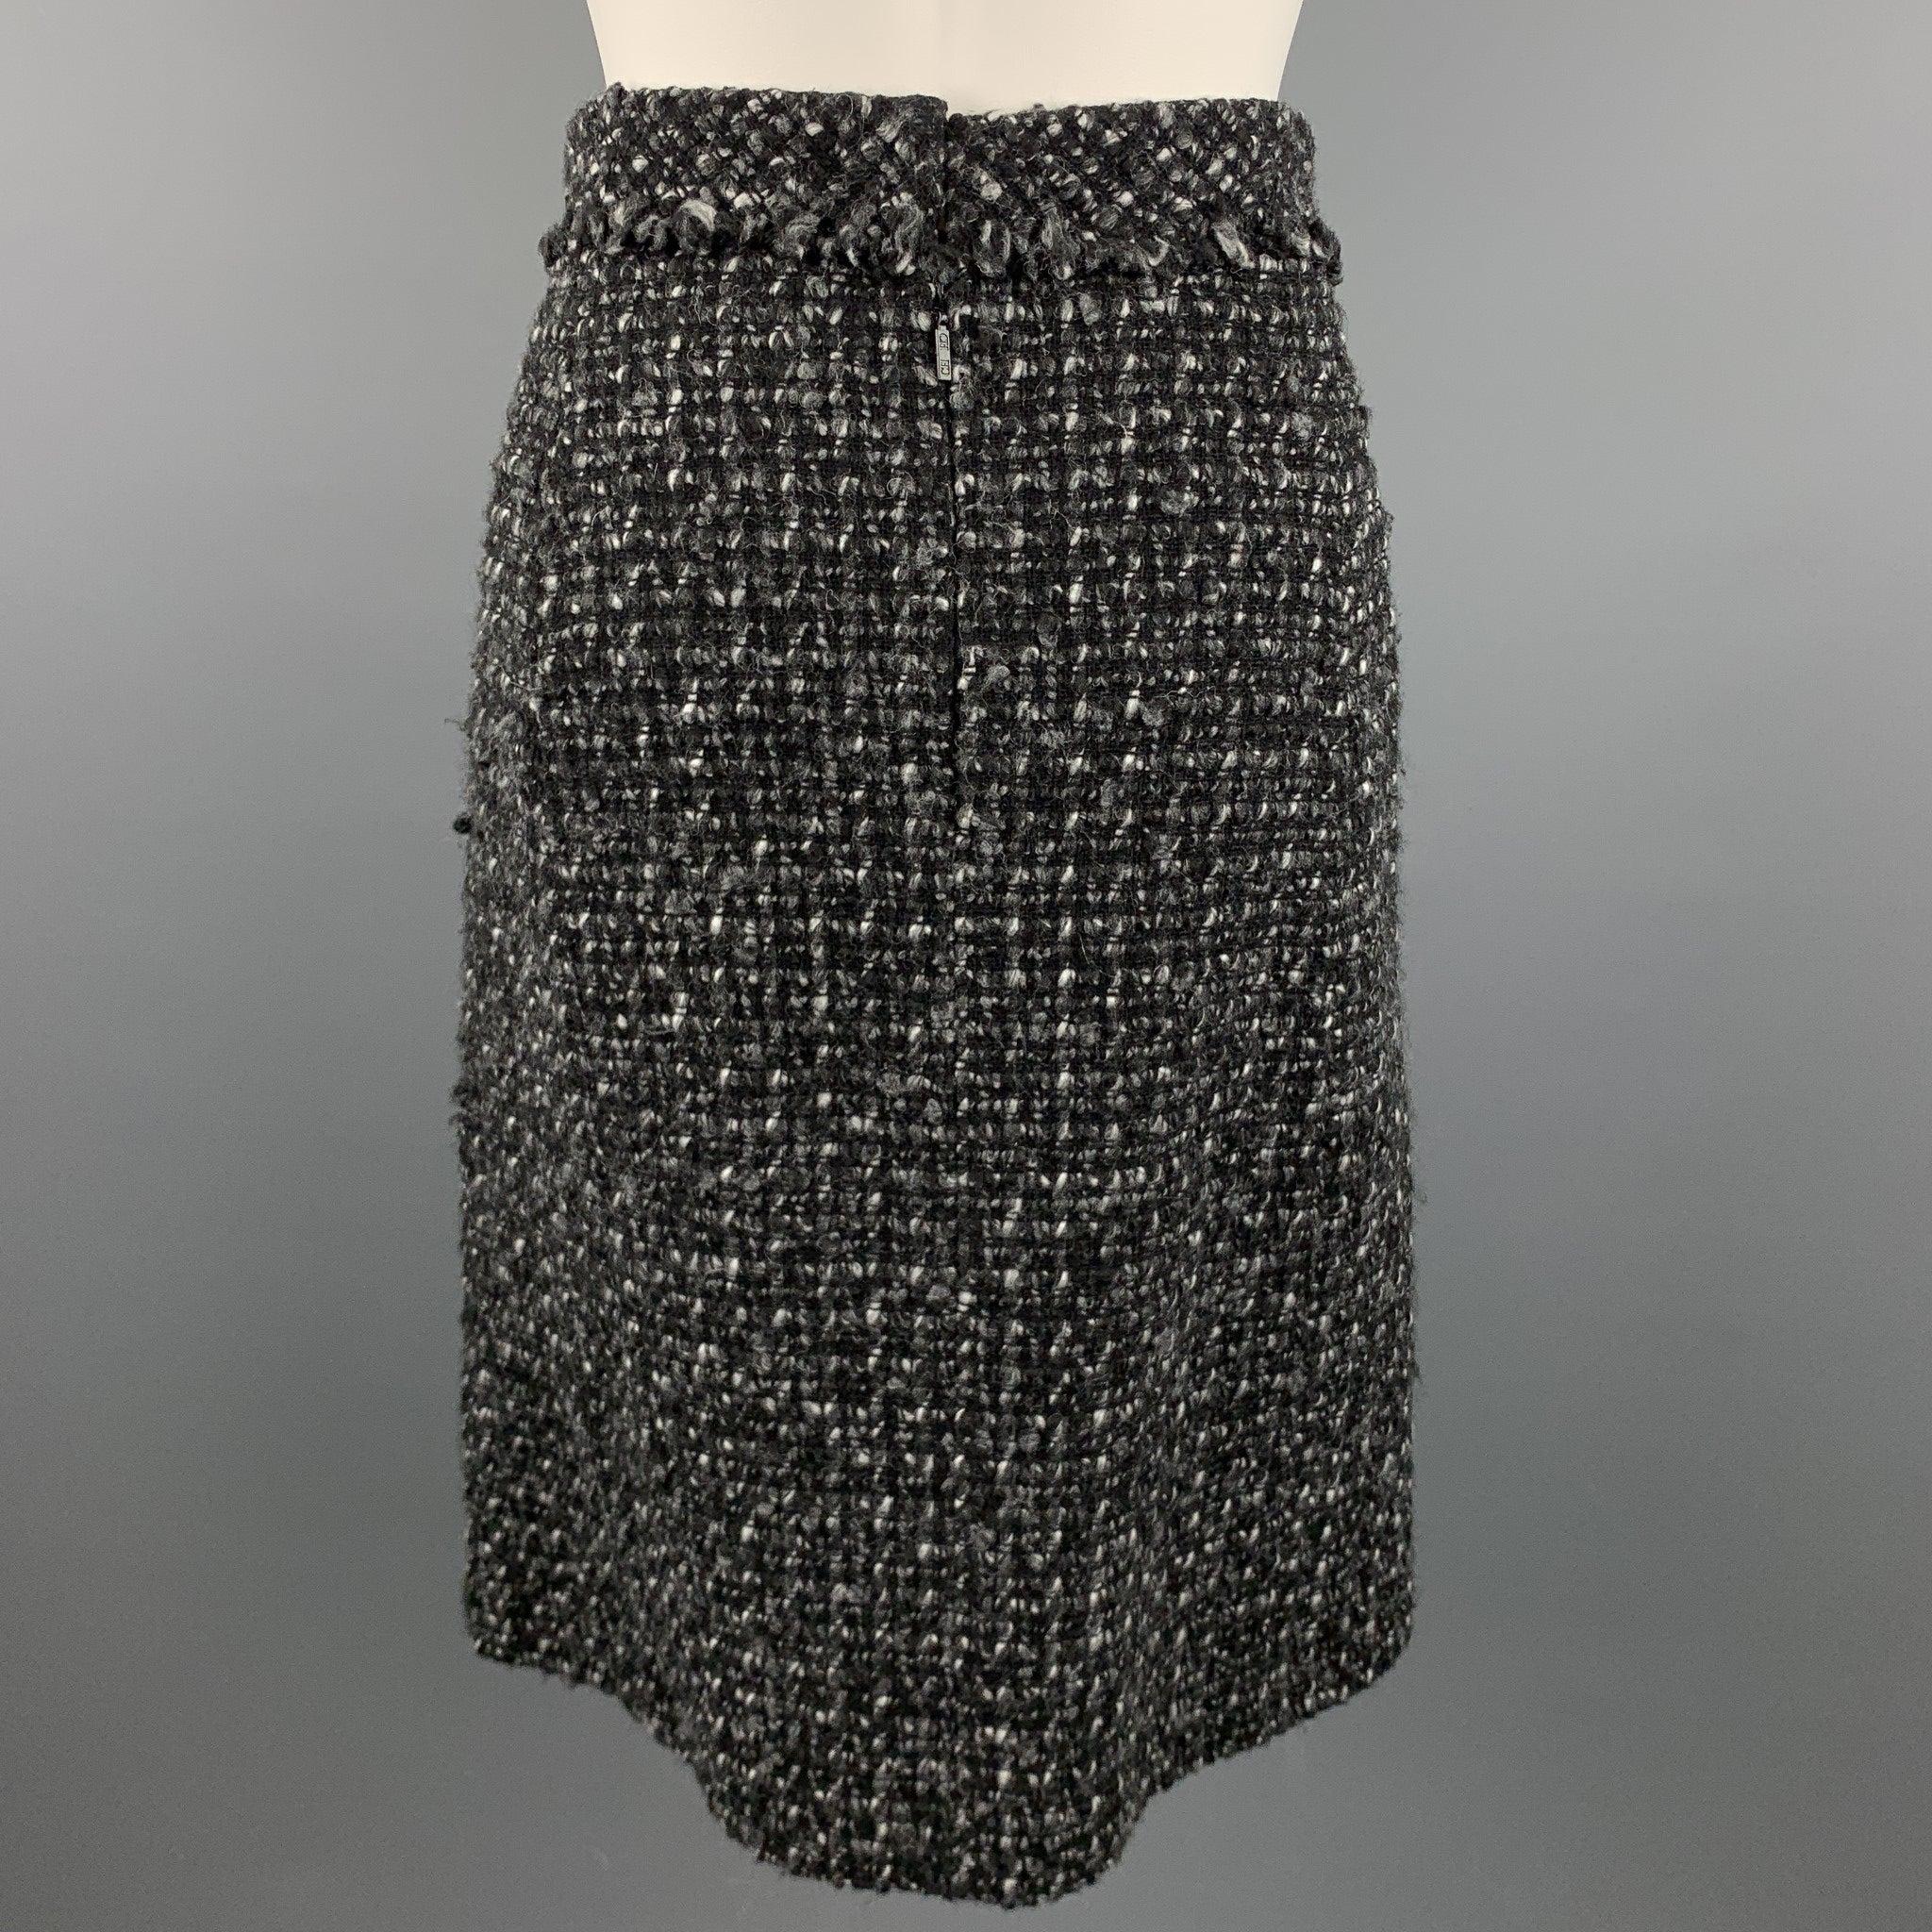 CAROLINA HERRERA Jupe en laine texturée bouclée noire et grise, Taille 4 Pour femmes en vente